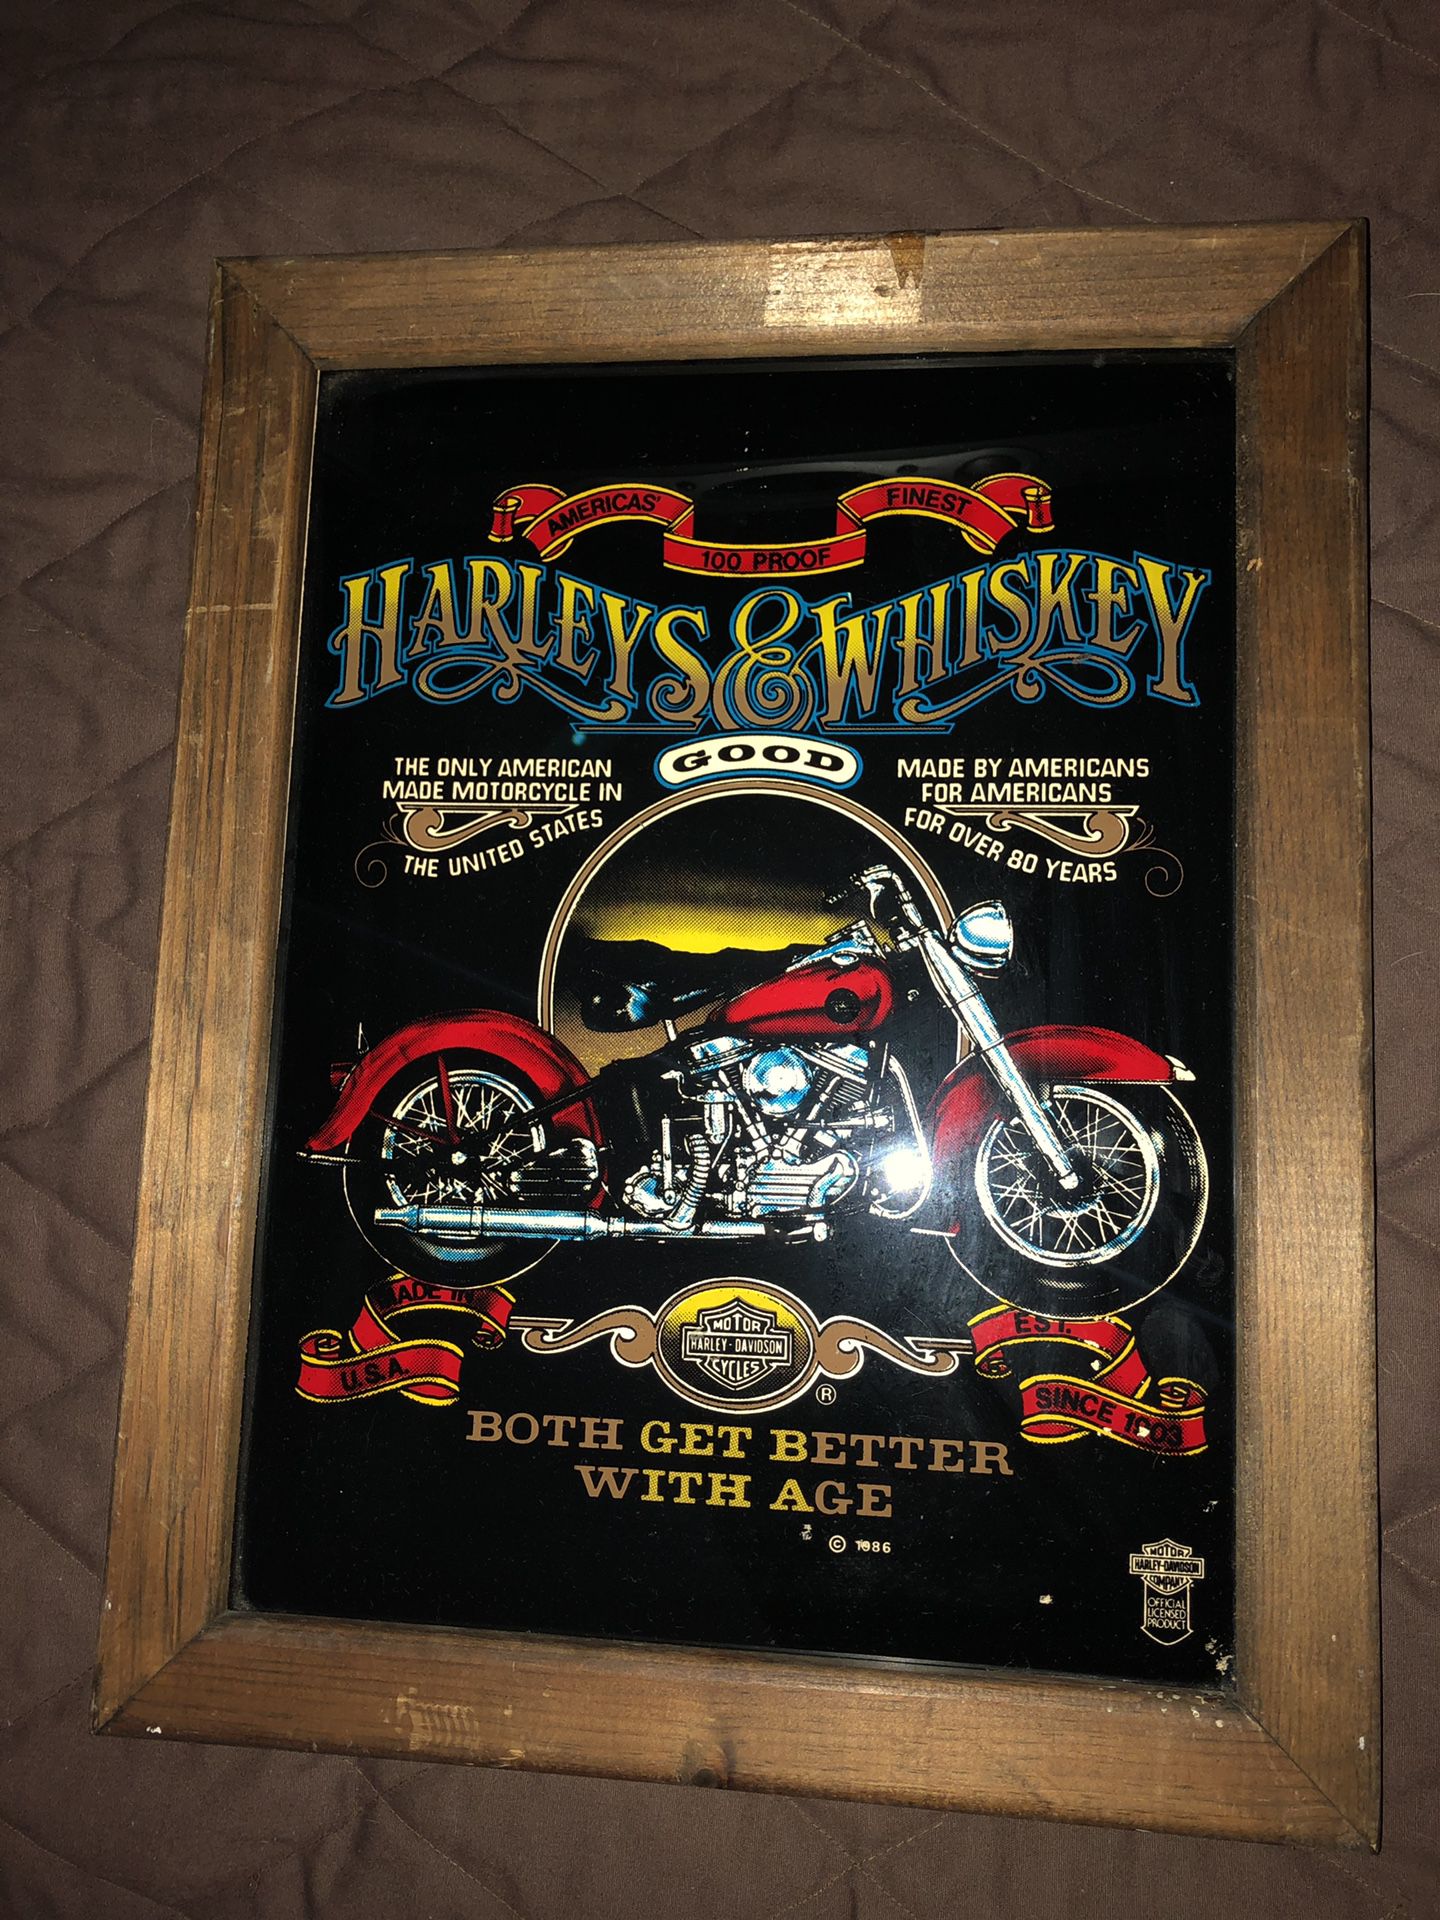 Harley Davidson framed poster from 1986